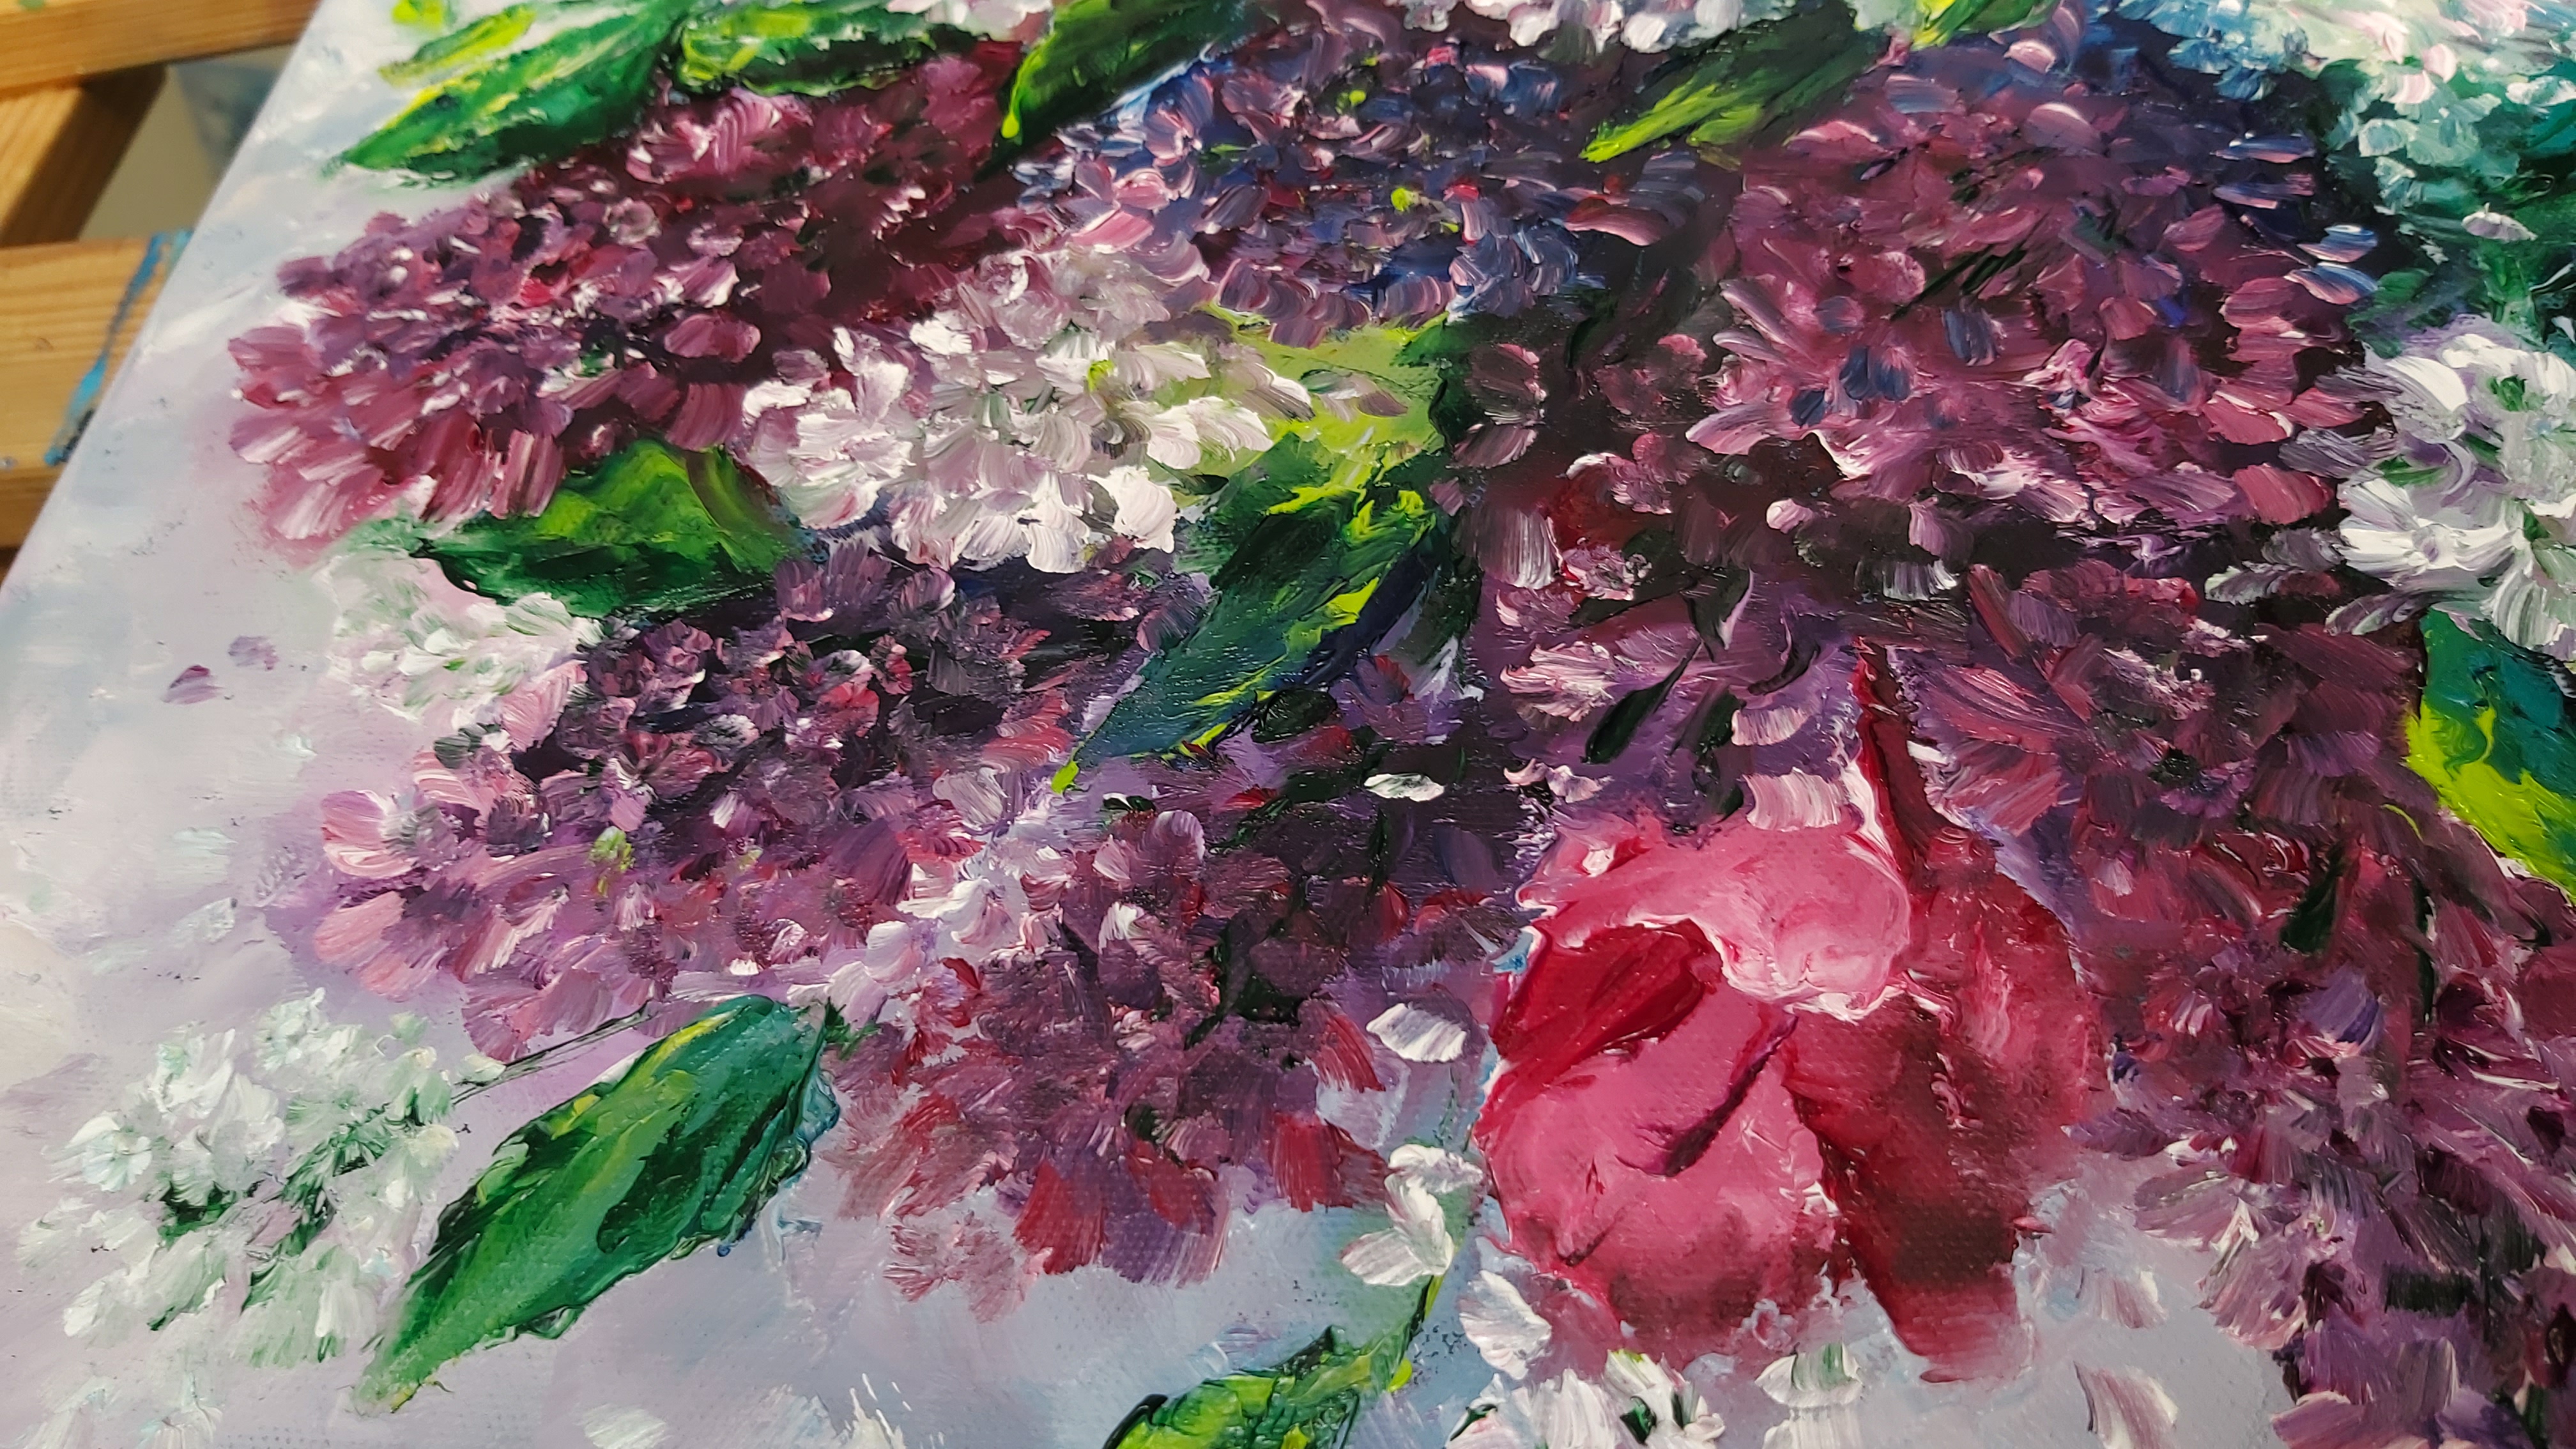 תמונה 2 ,ציור פרחי לילך .שמן על קנבס למכירה בנתניה אומנות  ציור